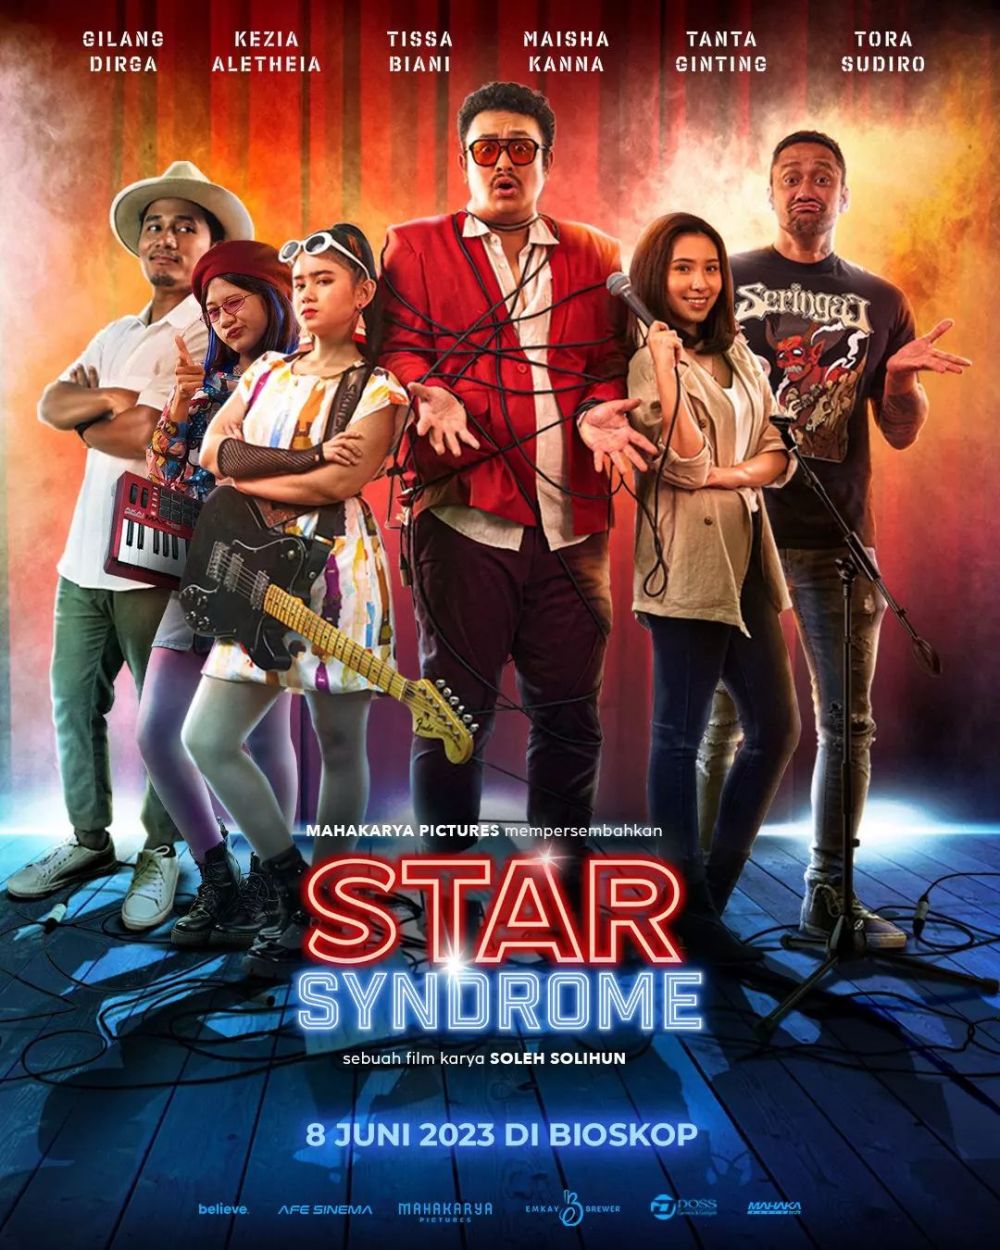 Tak Melulu Horor Ini 6 Rekomendasi Film Bioskop Indonesia Yang Tayang Juni 2023 